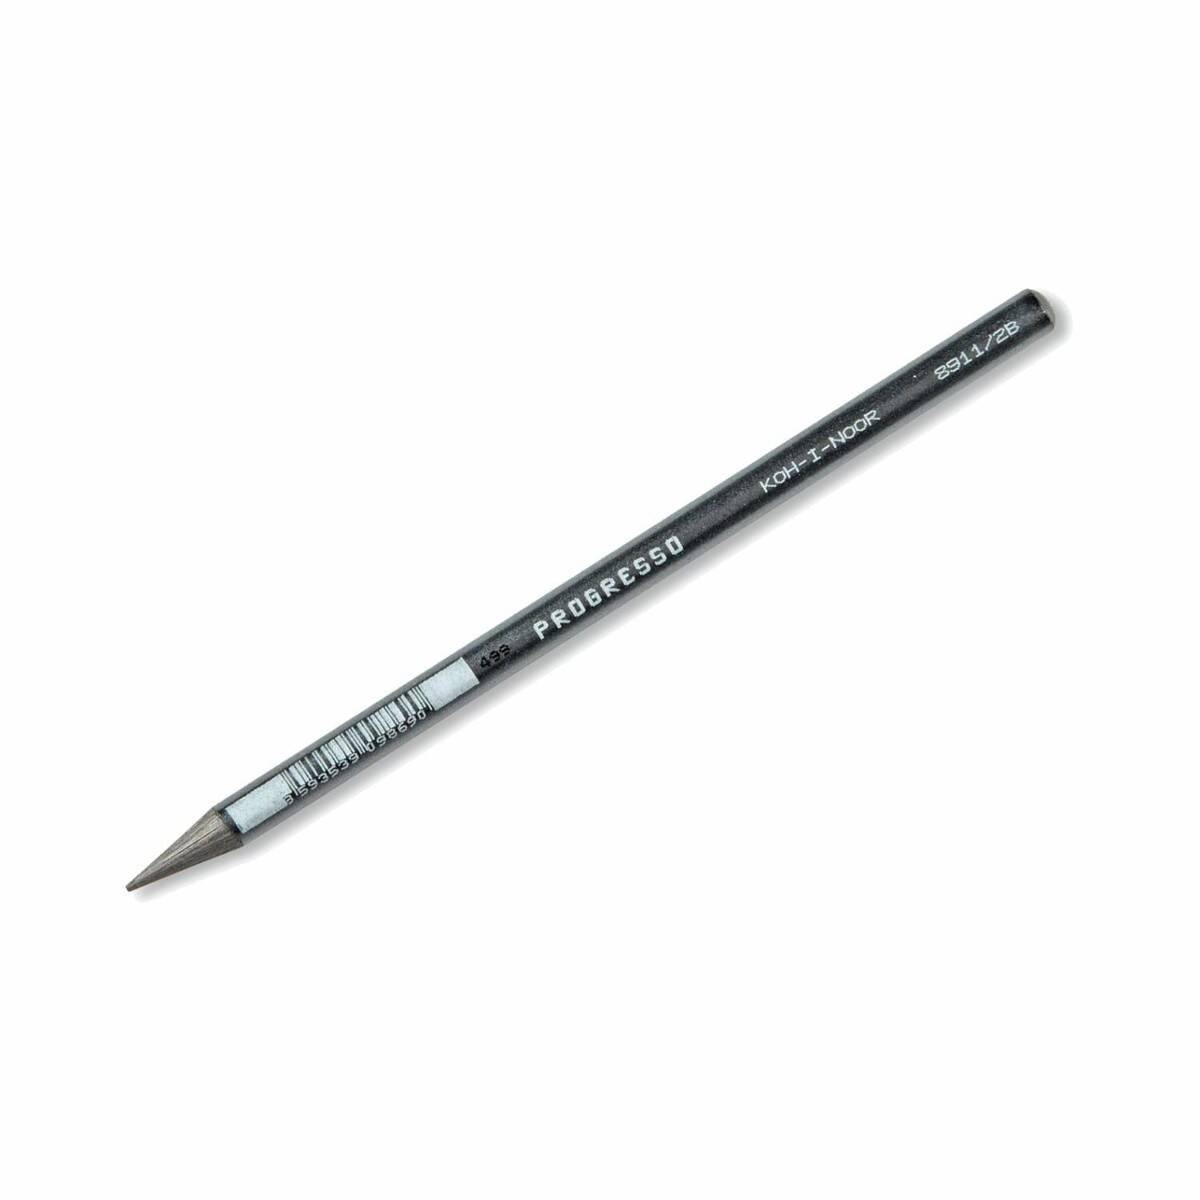 Ołówek Bezdrzewny HB PROGRESSO 8911/HB